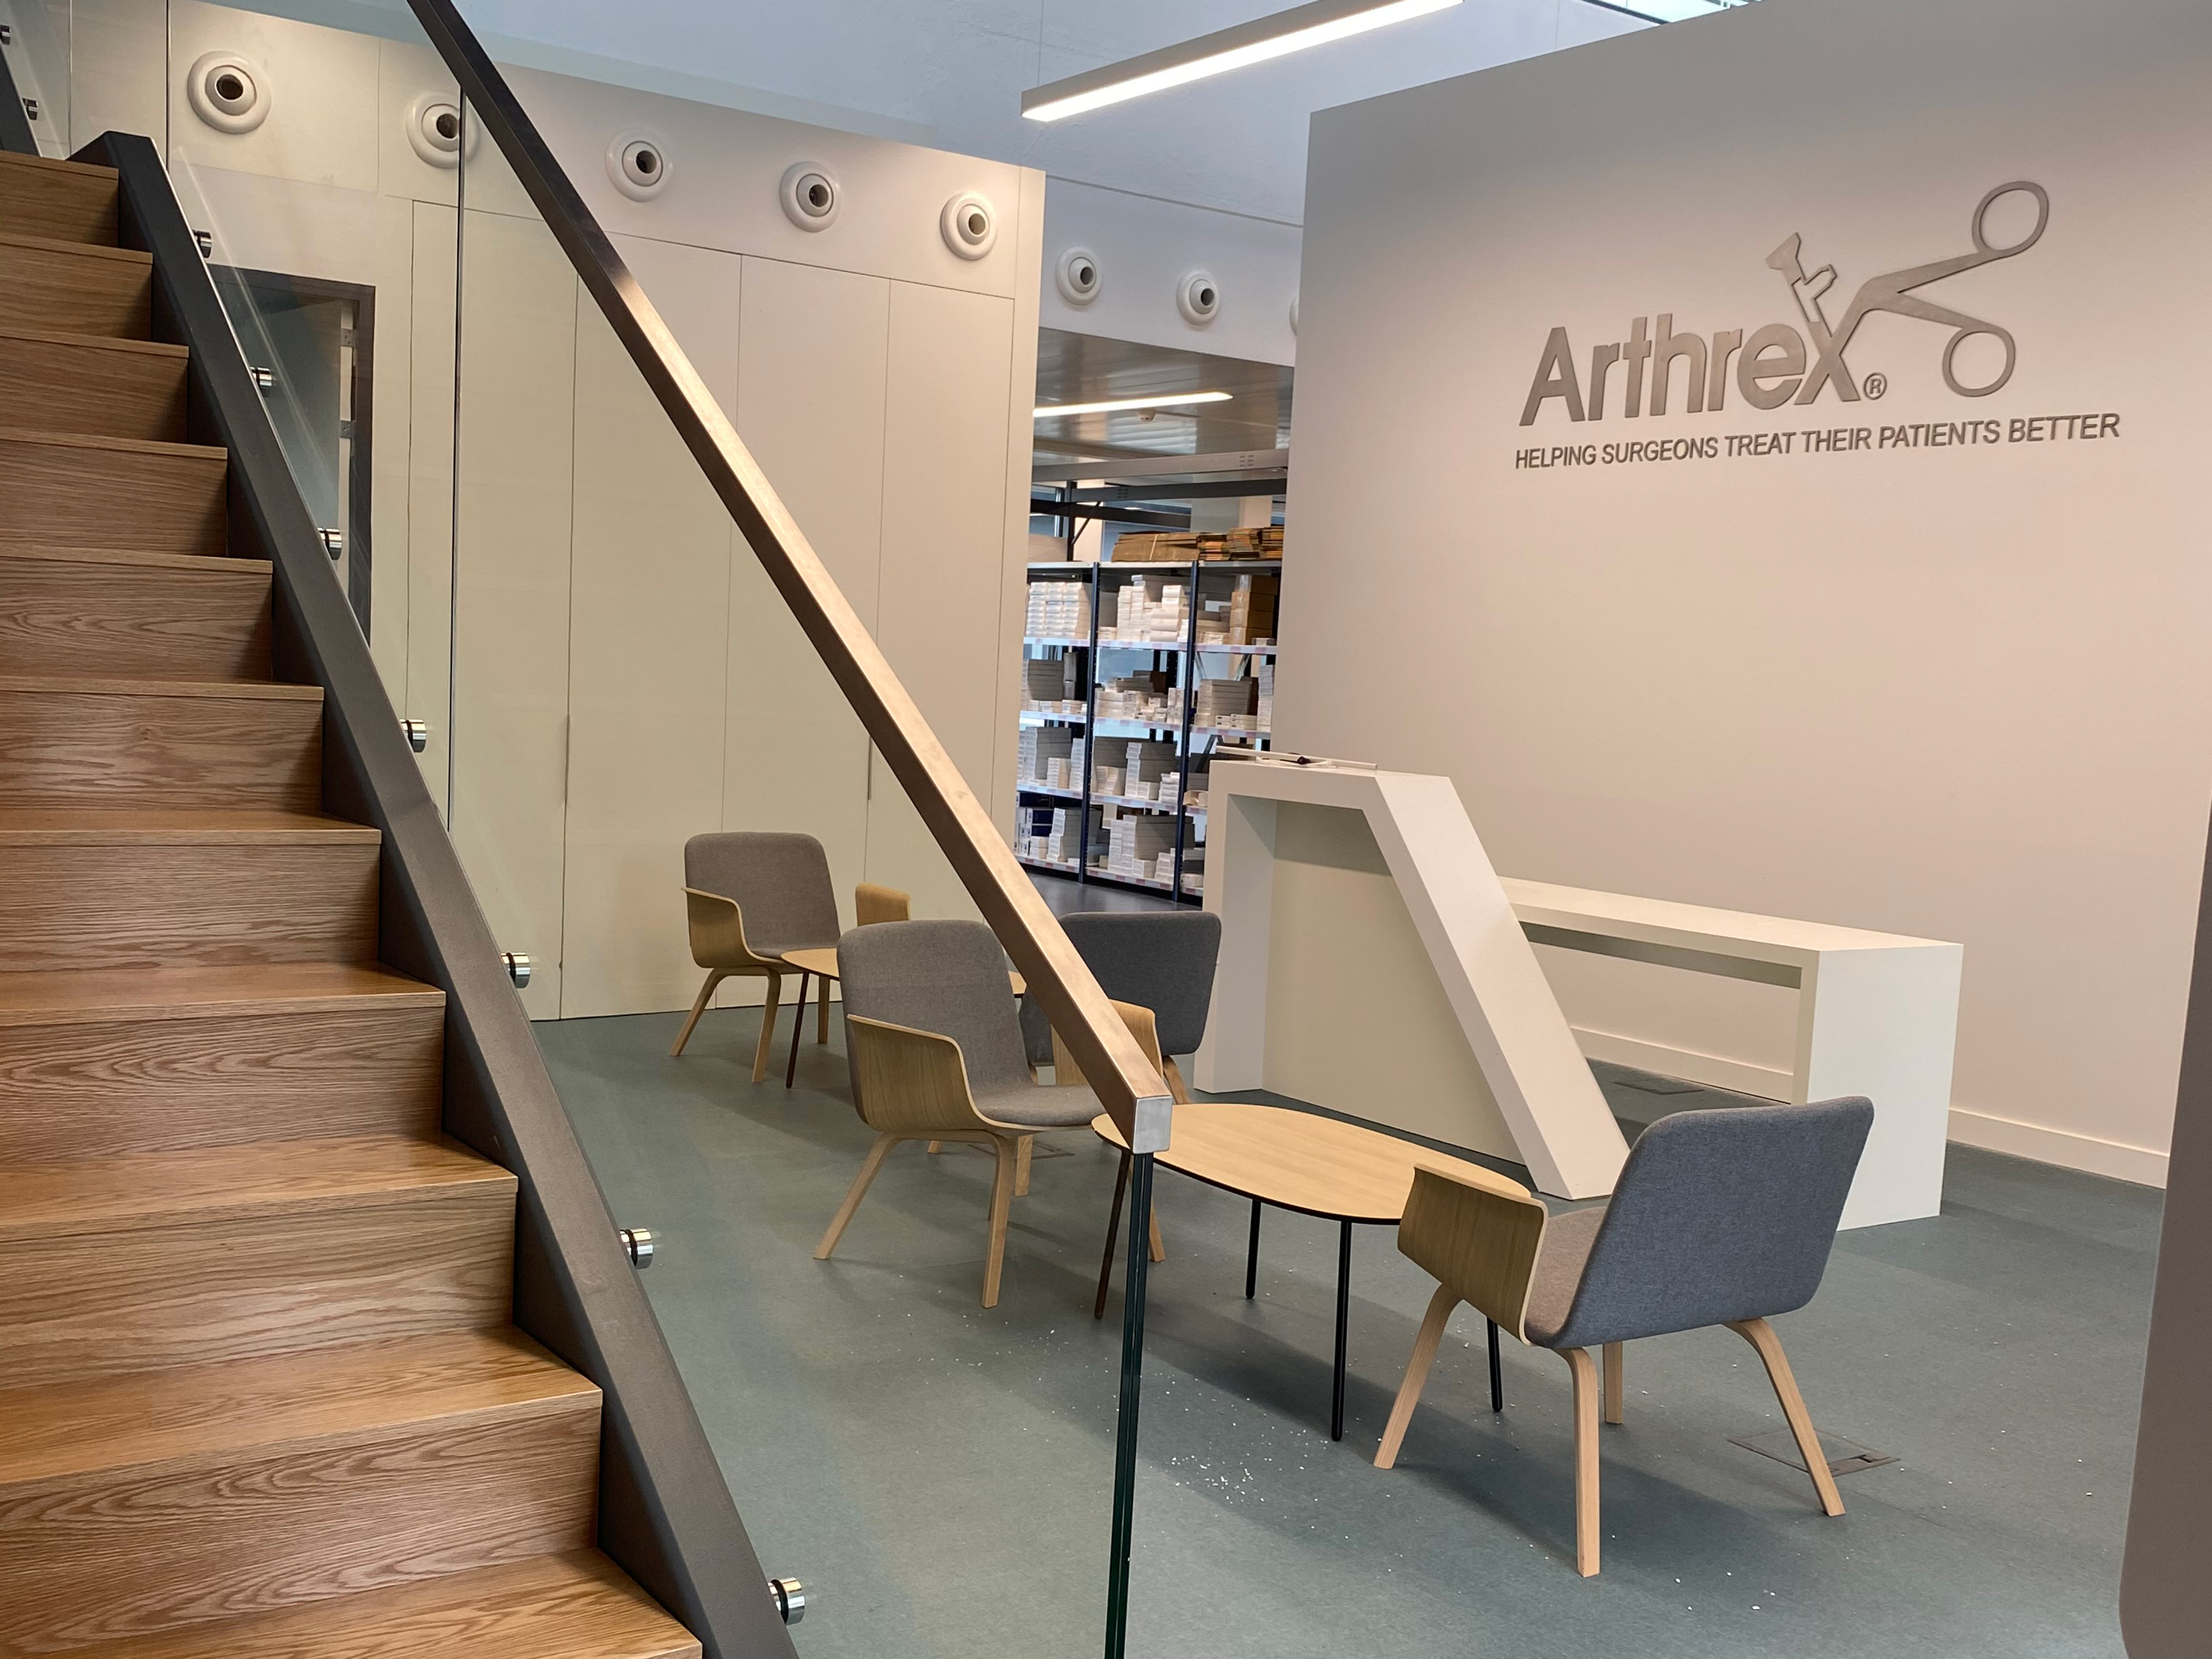 Arthrex Office Portugal